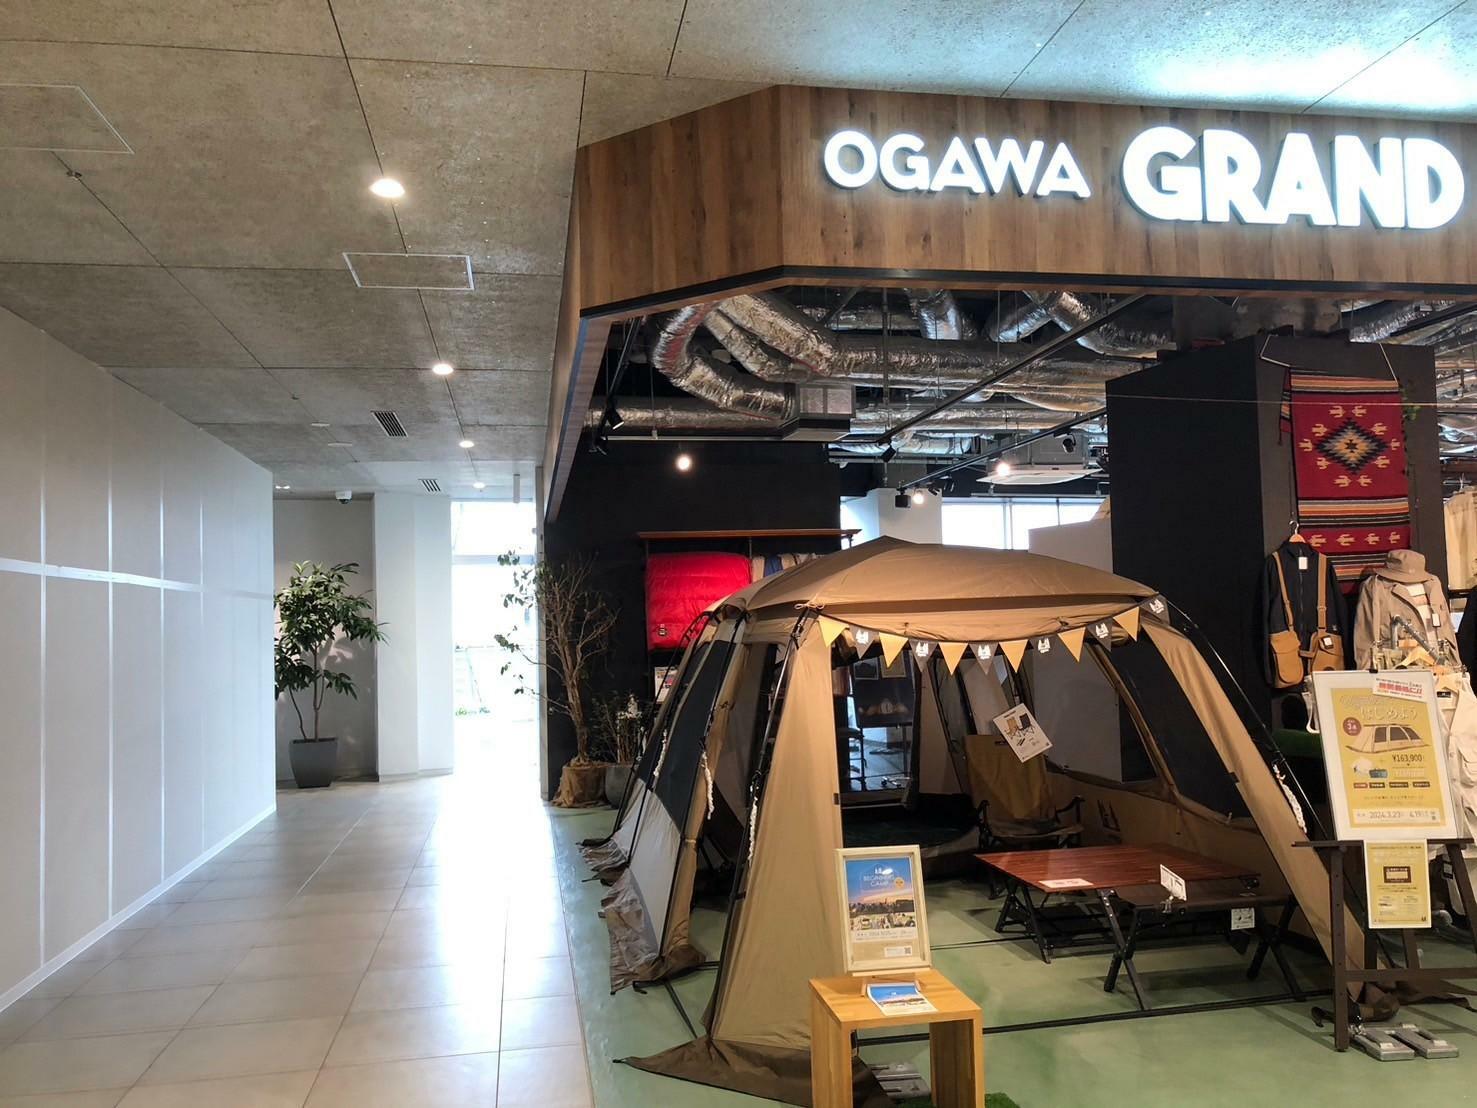 「ogawa GRAND lodge」より通路を挟んだ隣の区画にオープン予定